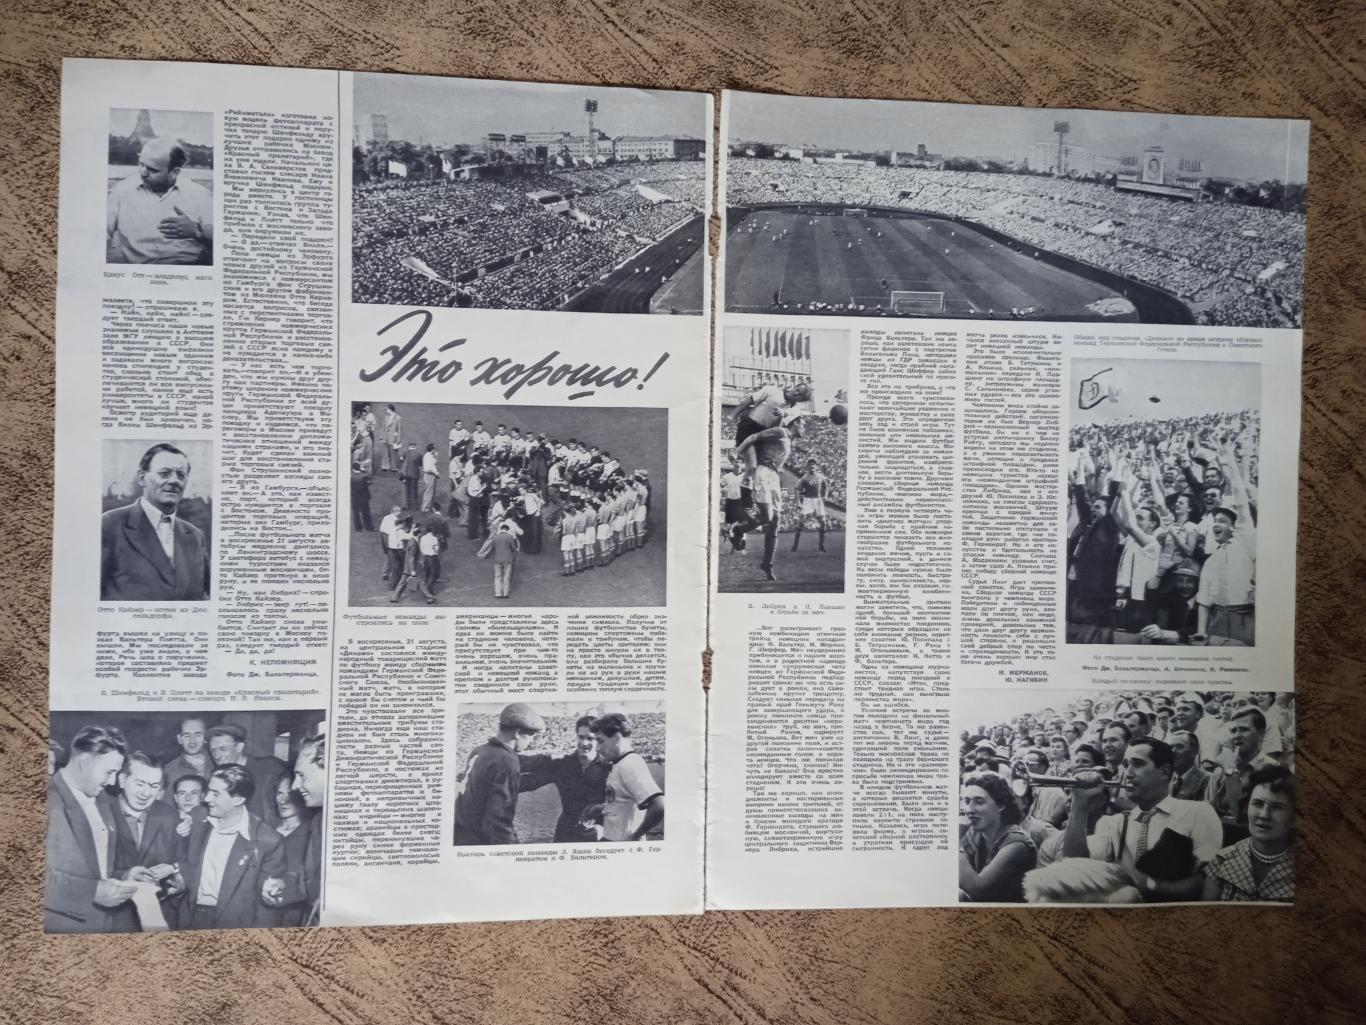 Статья.Футбол.СССР - ФРГ МТМ 1955 г. Журнал Огонек 1955 г.